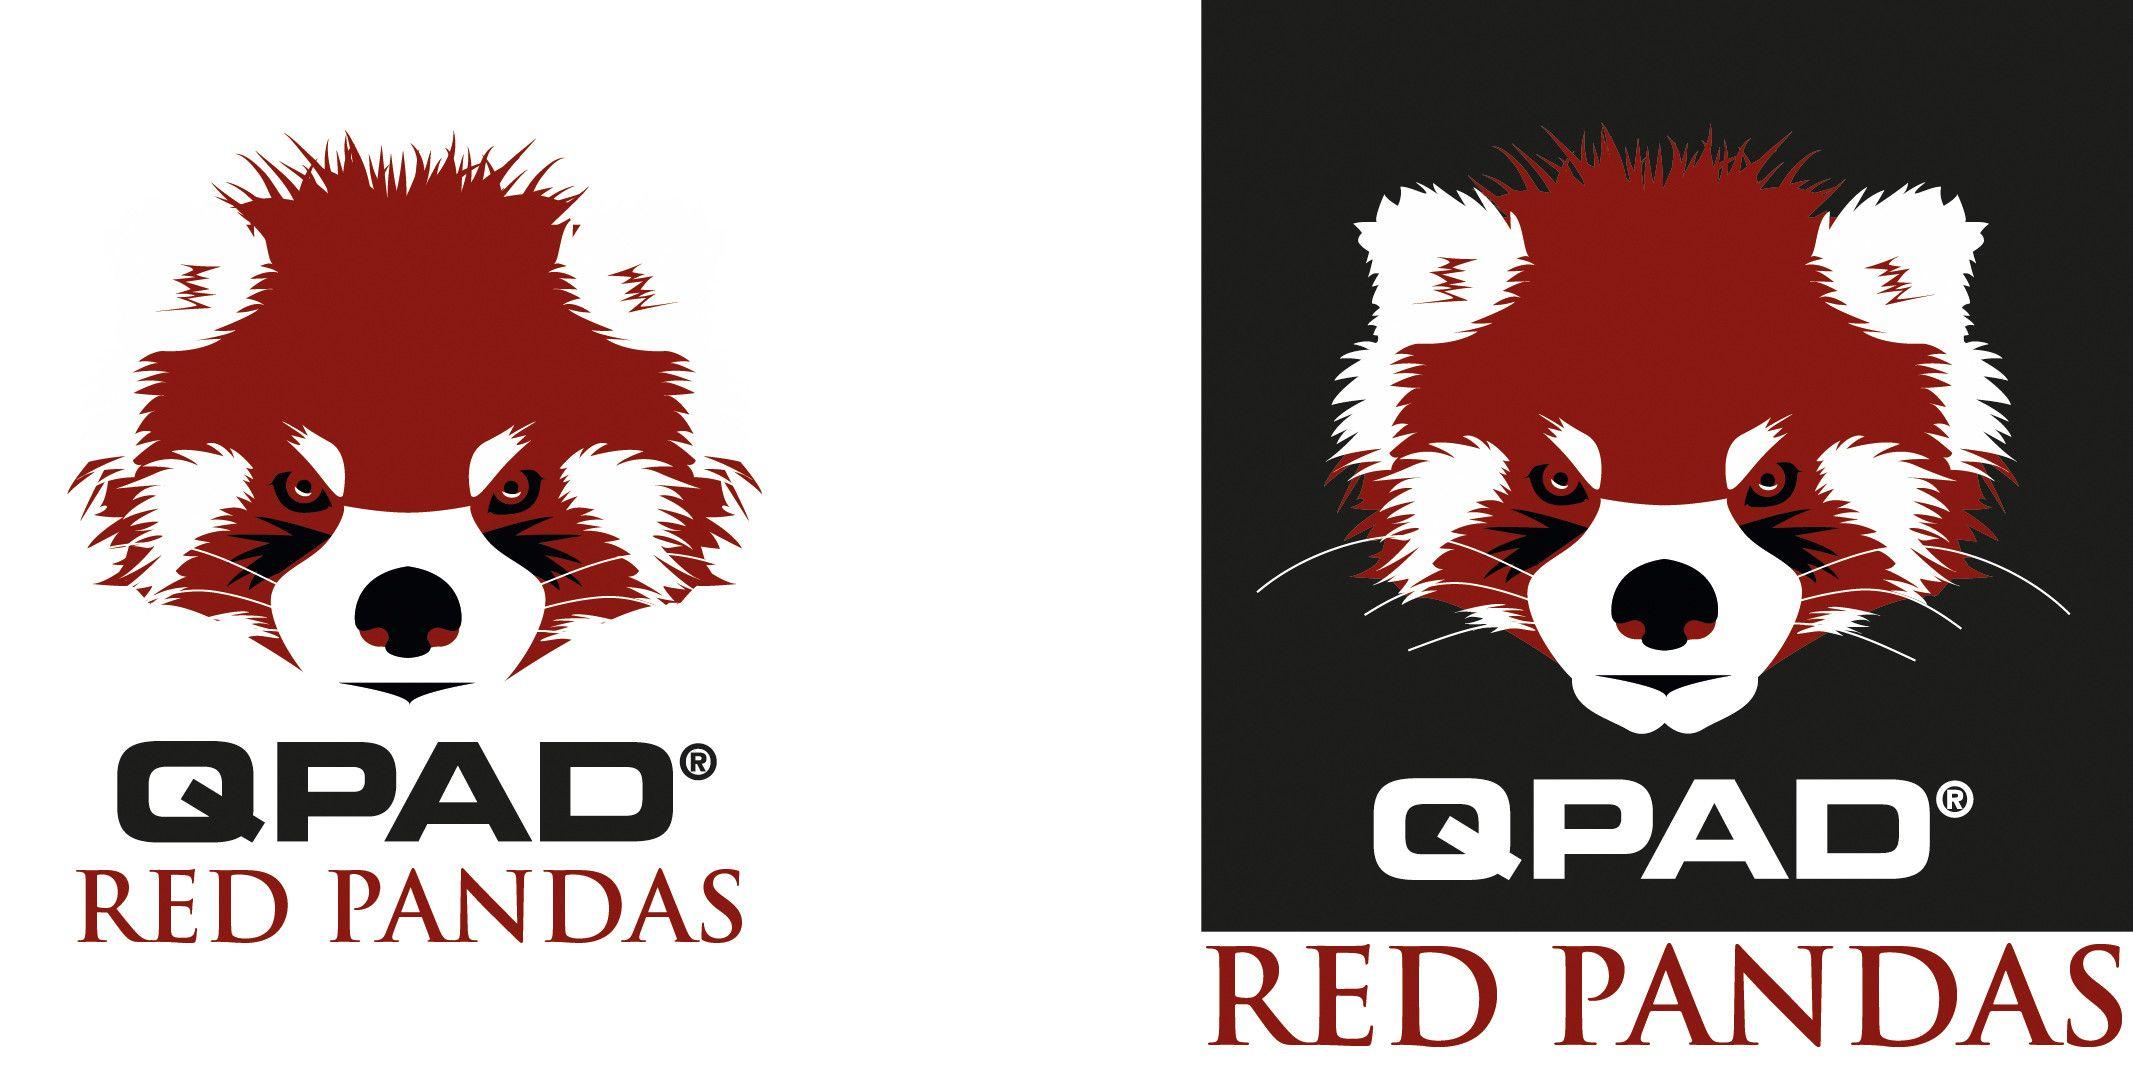 Red Panda Logo - Qpad Red pandas logo